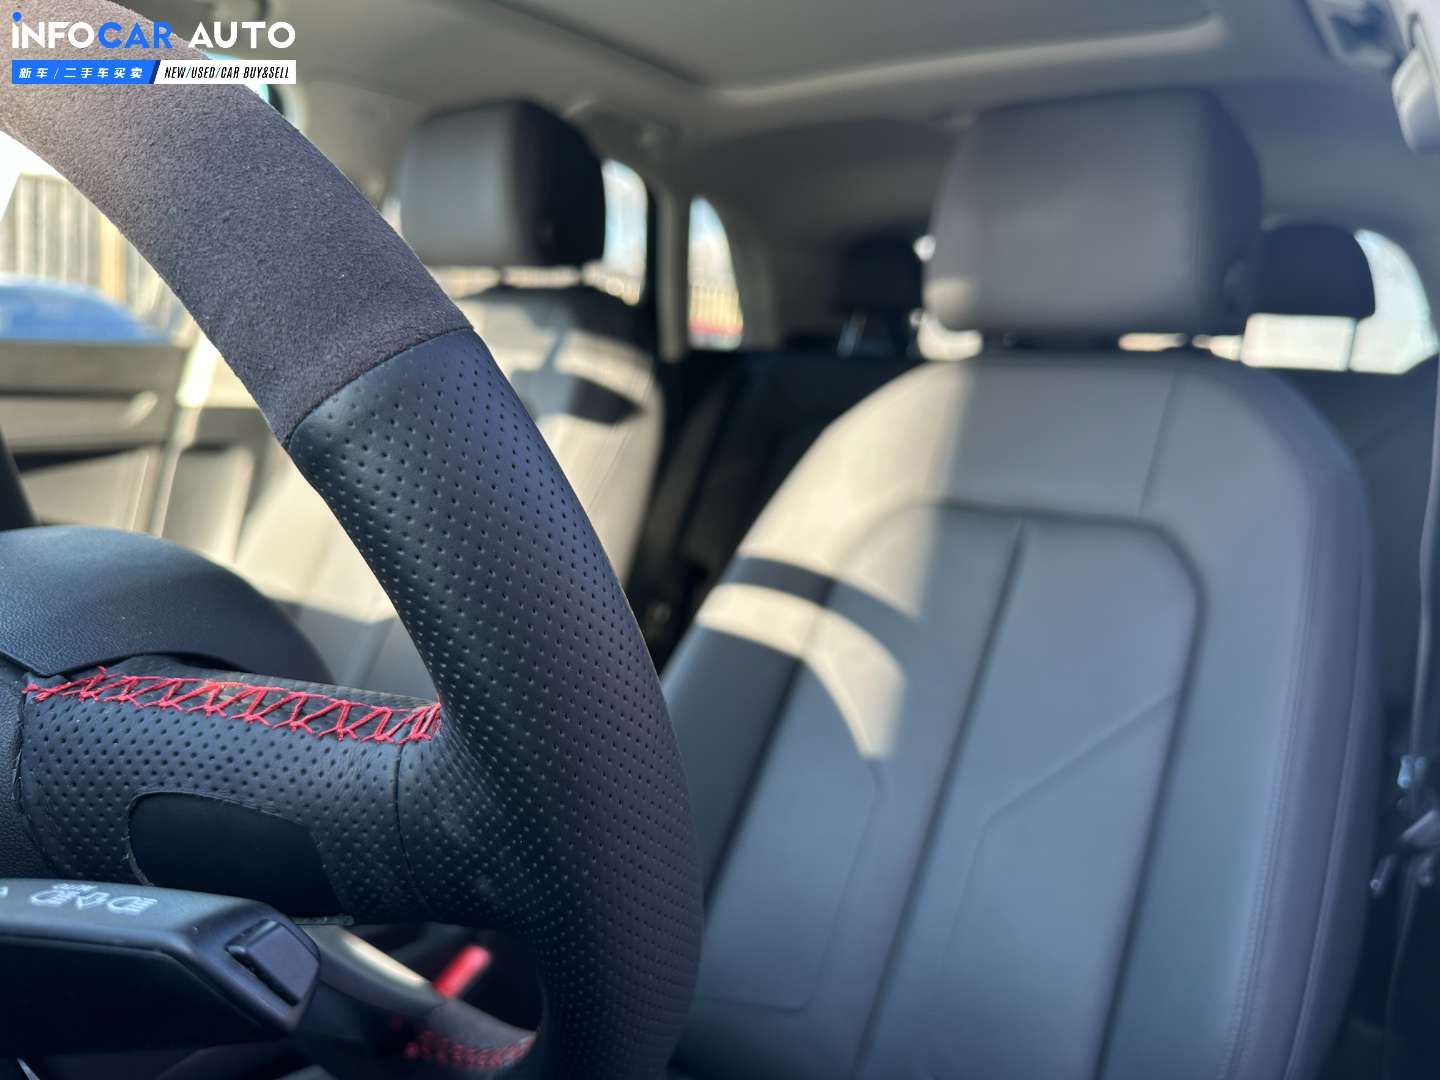 2022 Audi Q3 Komfort - INFOCAR - Toronto Auto Trading Platform